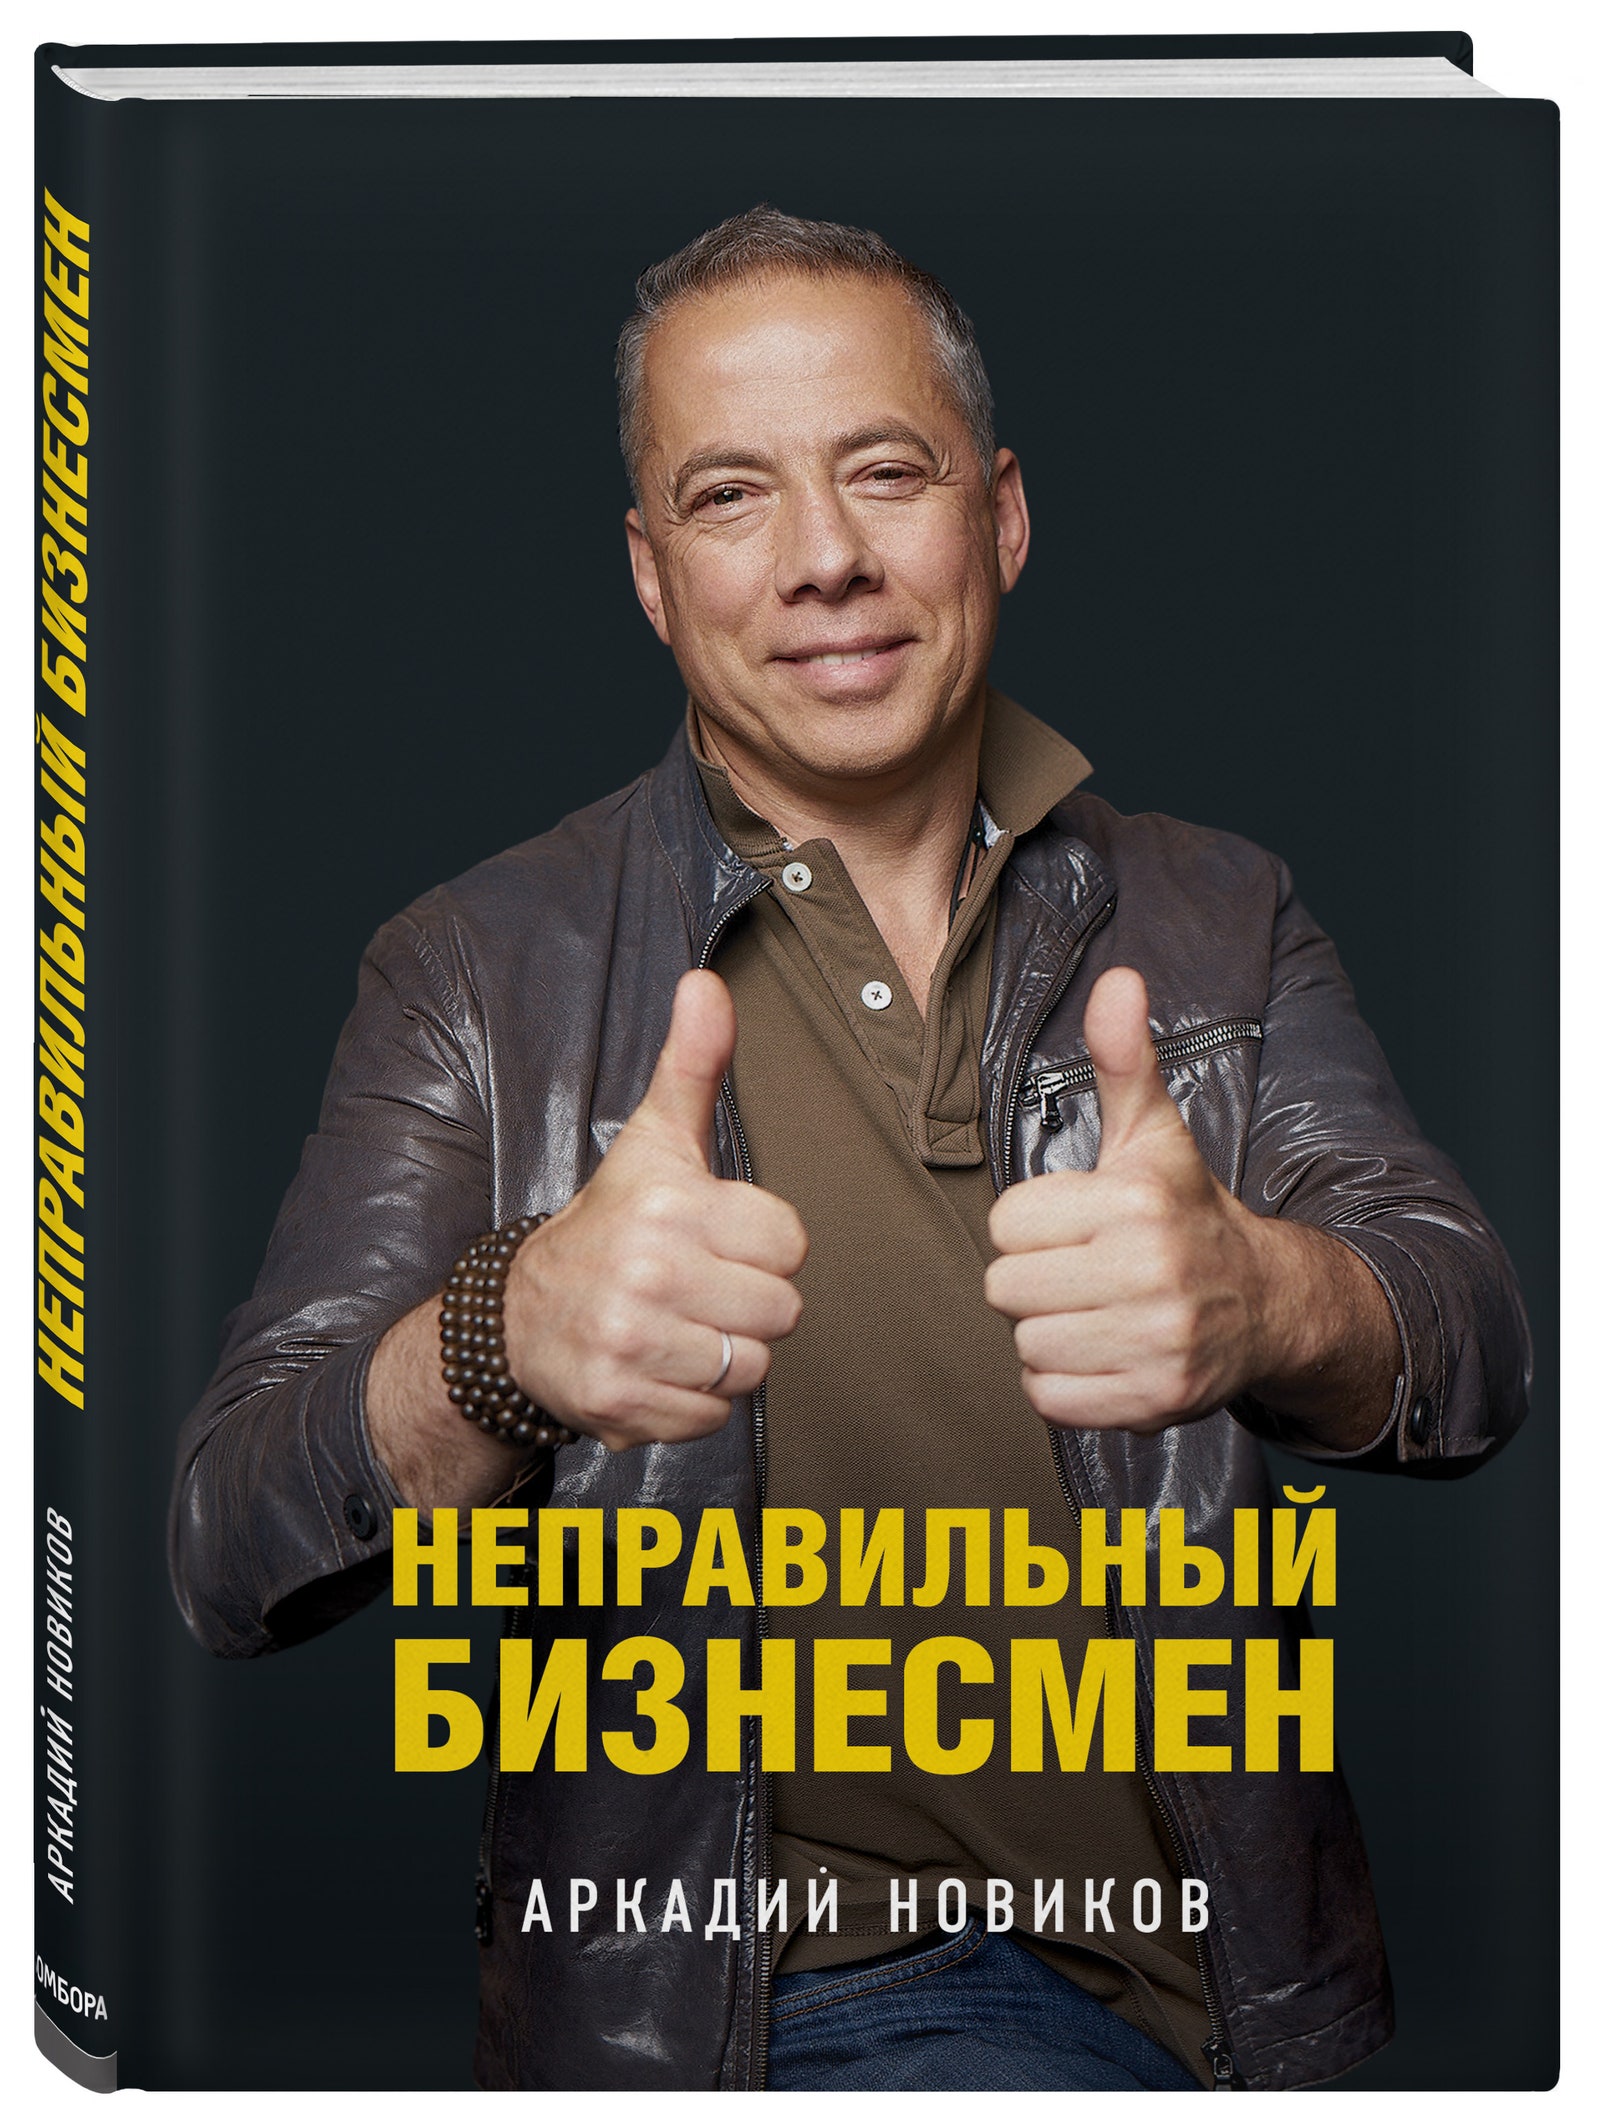 Книга «Неправильный бизнесмен. Из жизни ресторатора» Аркадий Новиков травит байки